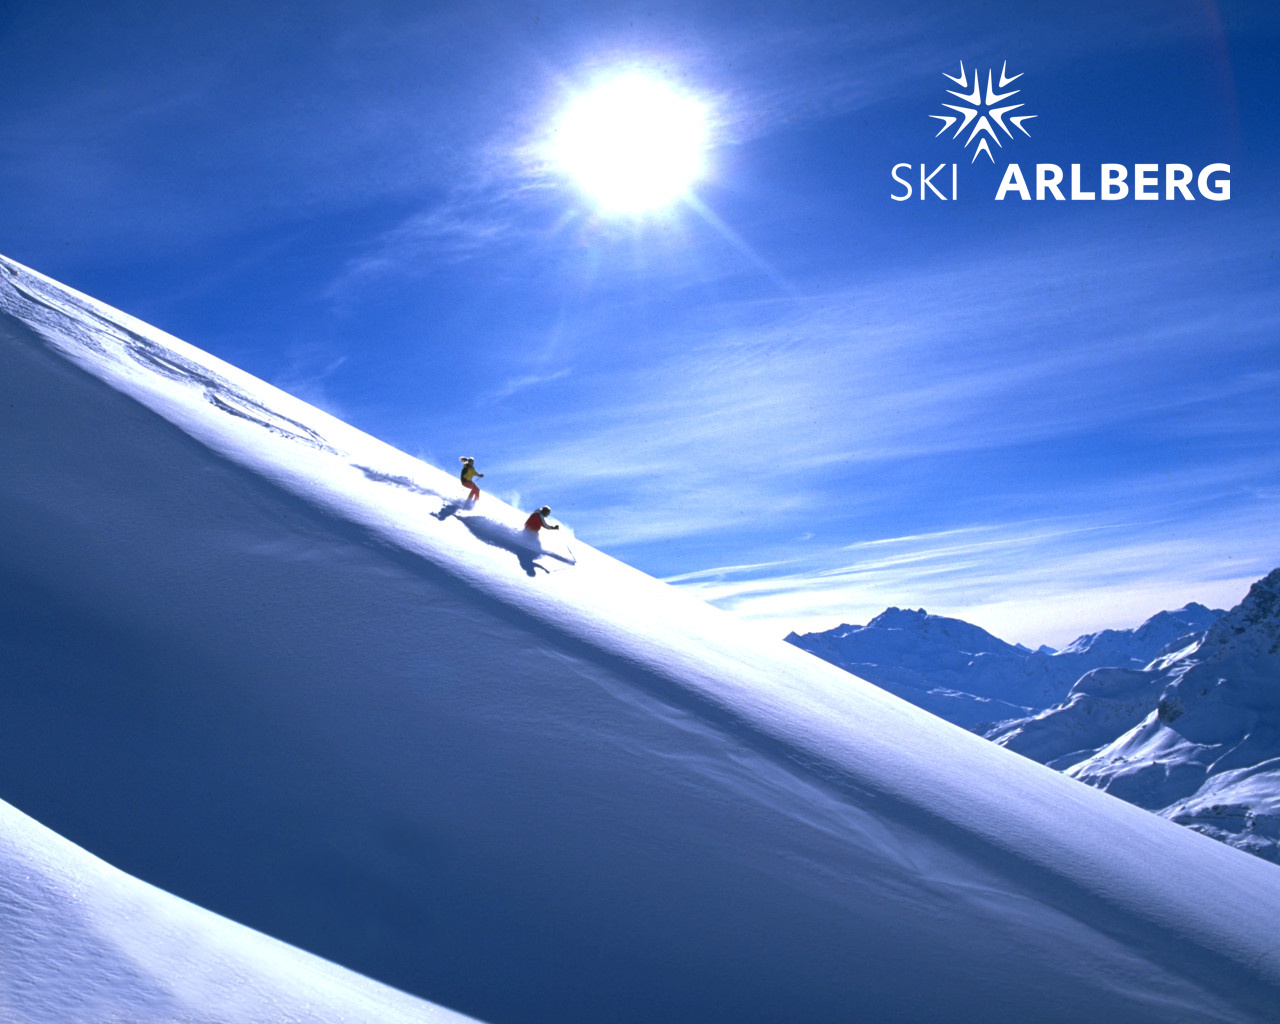 Ski Arlberg Die Wiege Des Skilaufs